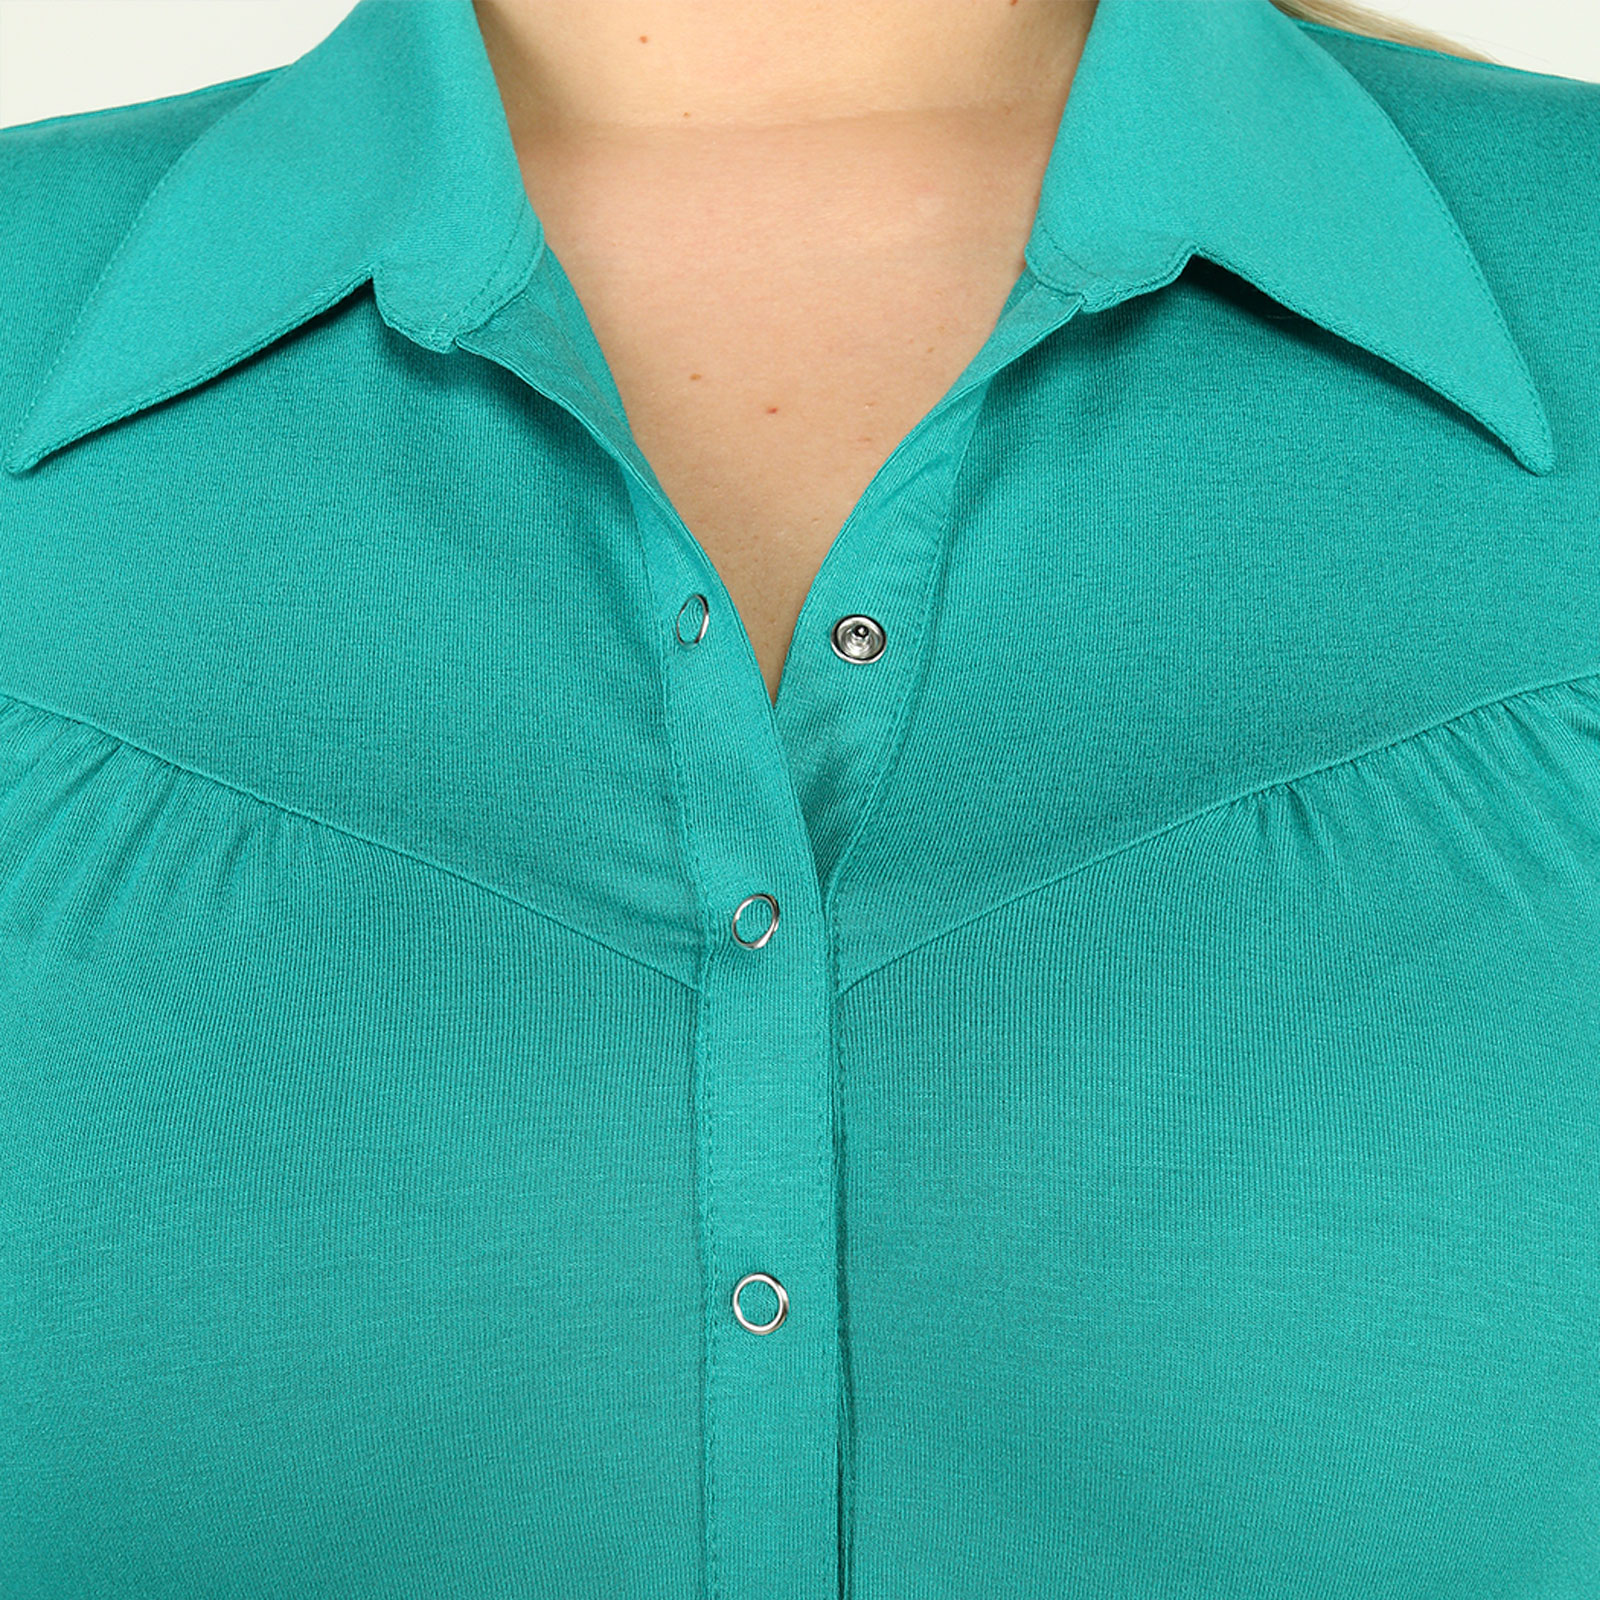 Блуза с пуговицами на воротнике Новое Время, размер 62, цвет золотистый - фото 6